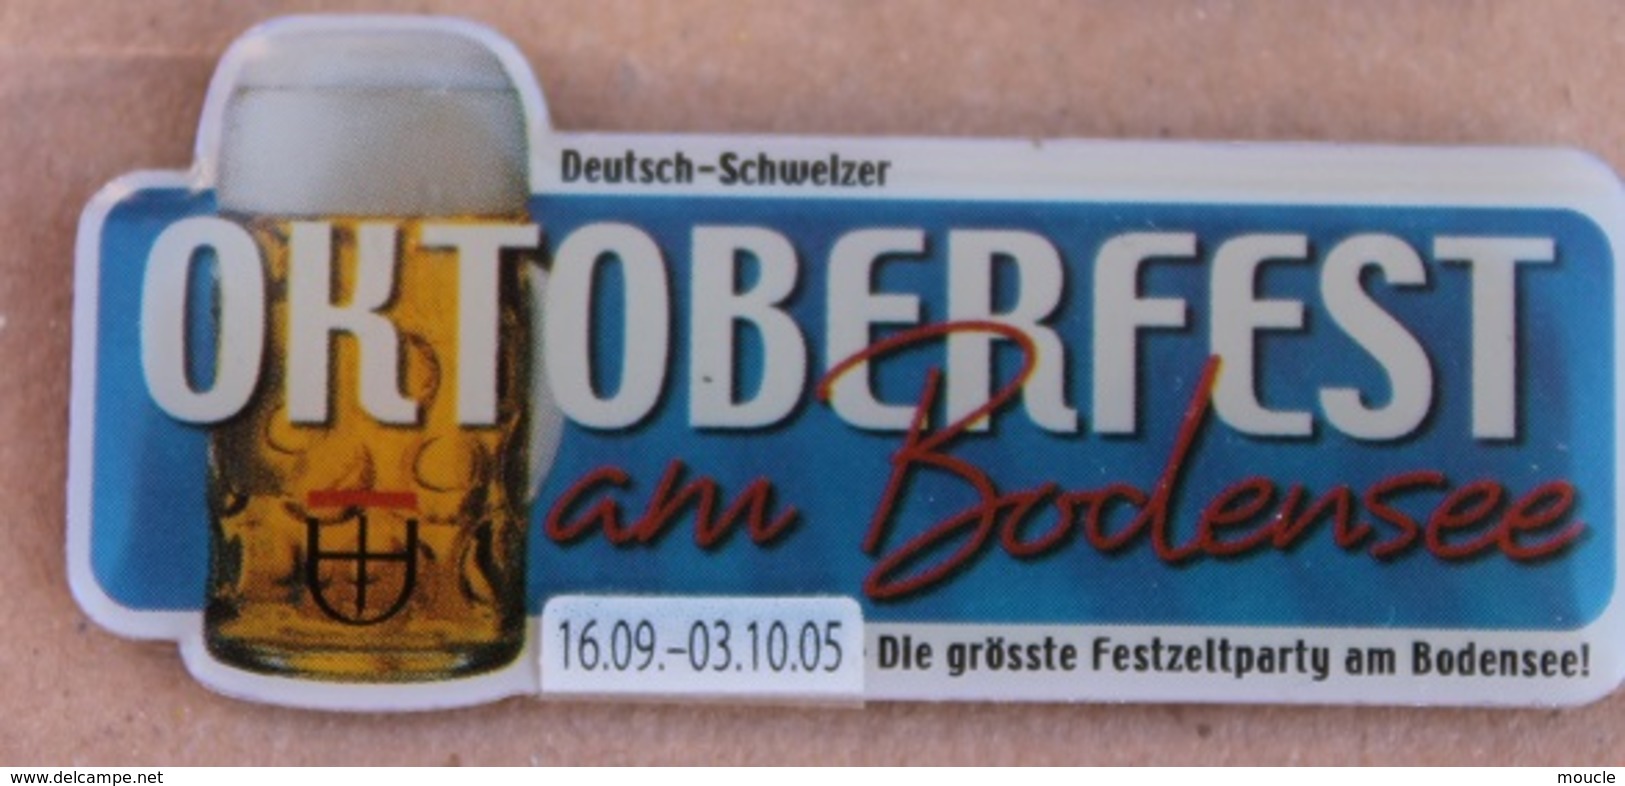 OKTOBERFEST AM BODENSEE - 19-09 / 03-10 05 - DIE GRÖSSE FESTZELTPARTY AM BODENSEE ! - BIERE - BEER - CHOPE      (16) - Birra